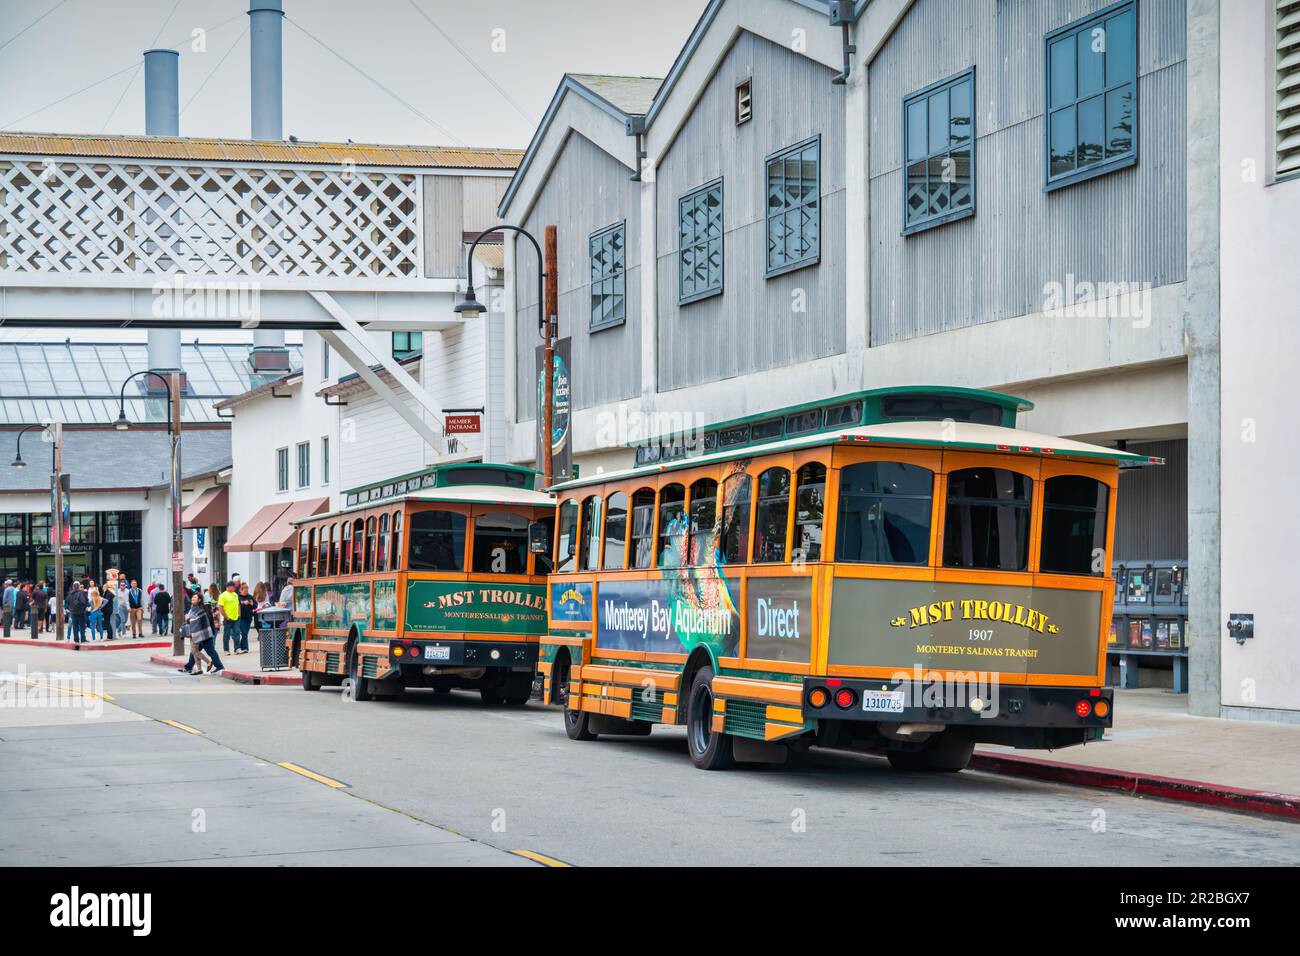 Klassische Trolleys in der Cannery Row Street in Monterey, CA, USA. Cannery Row war der Schauplatz von John Steinbecks Romanen, heute eine Touristenattraktion. Stockfoto